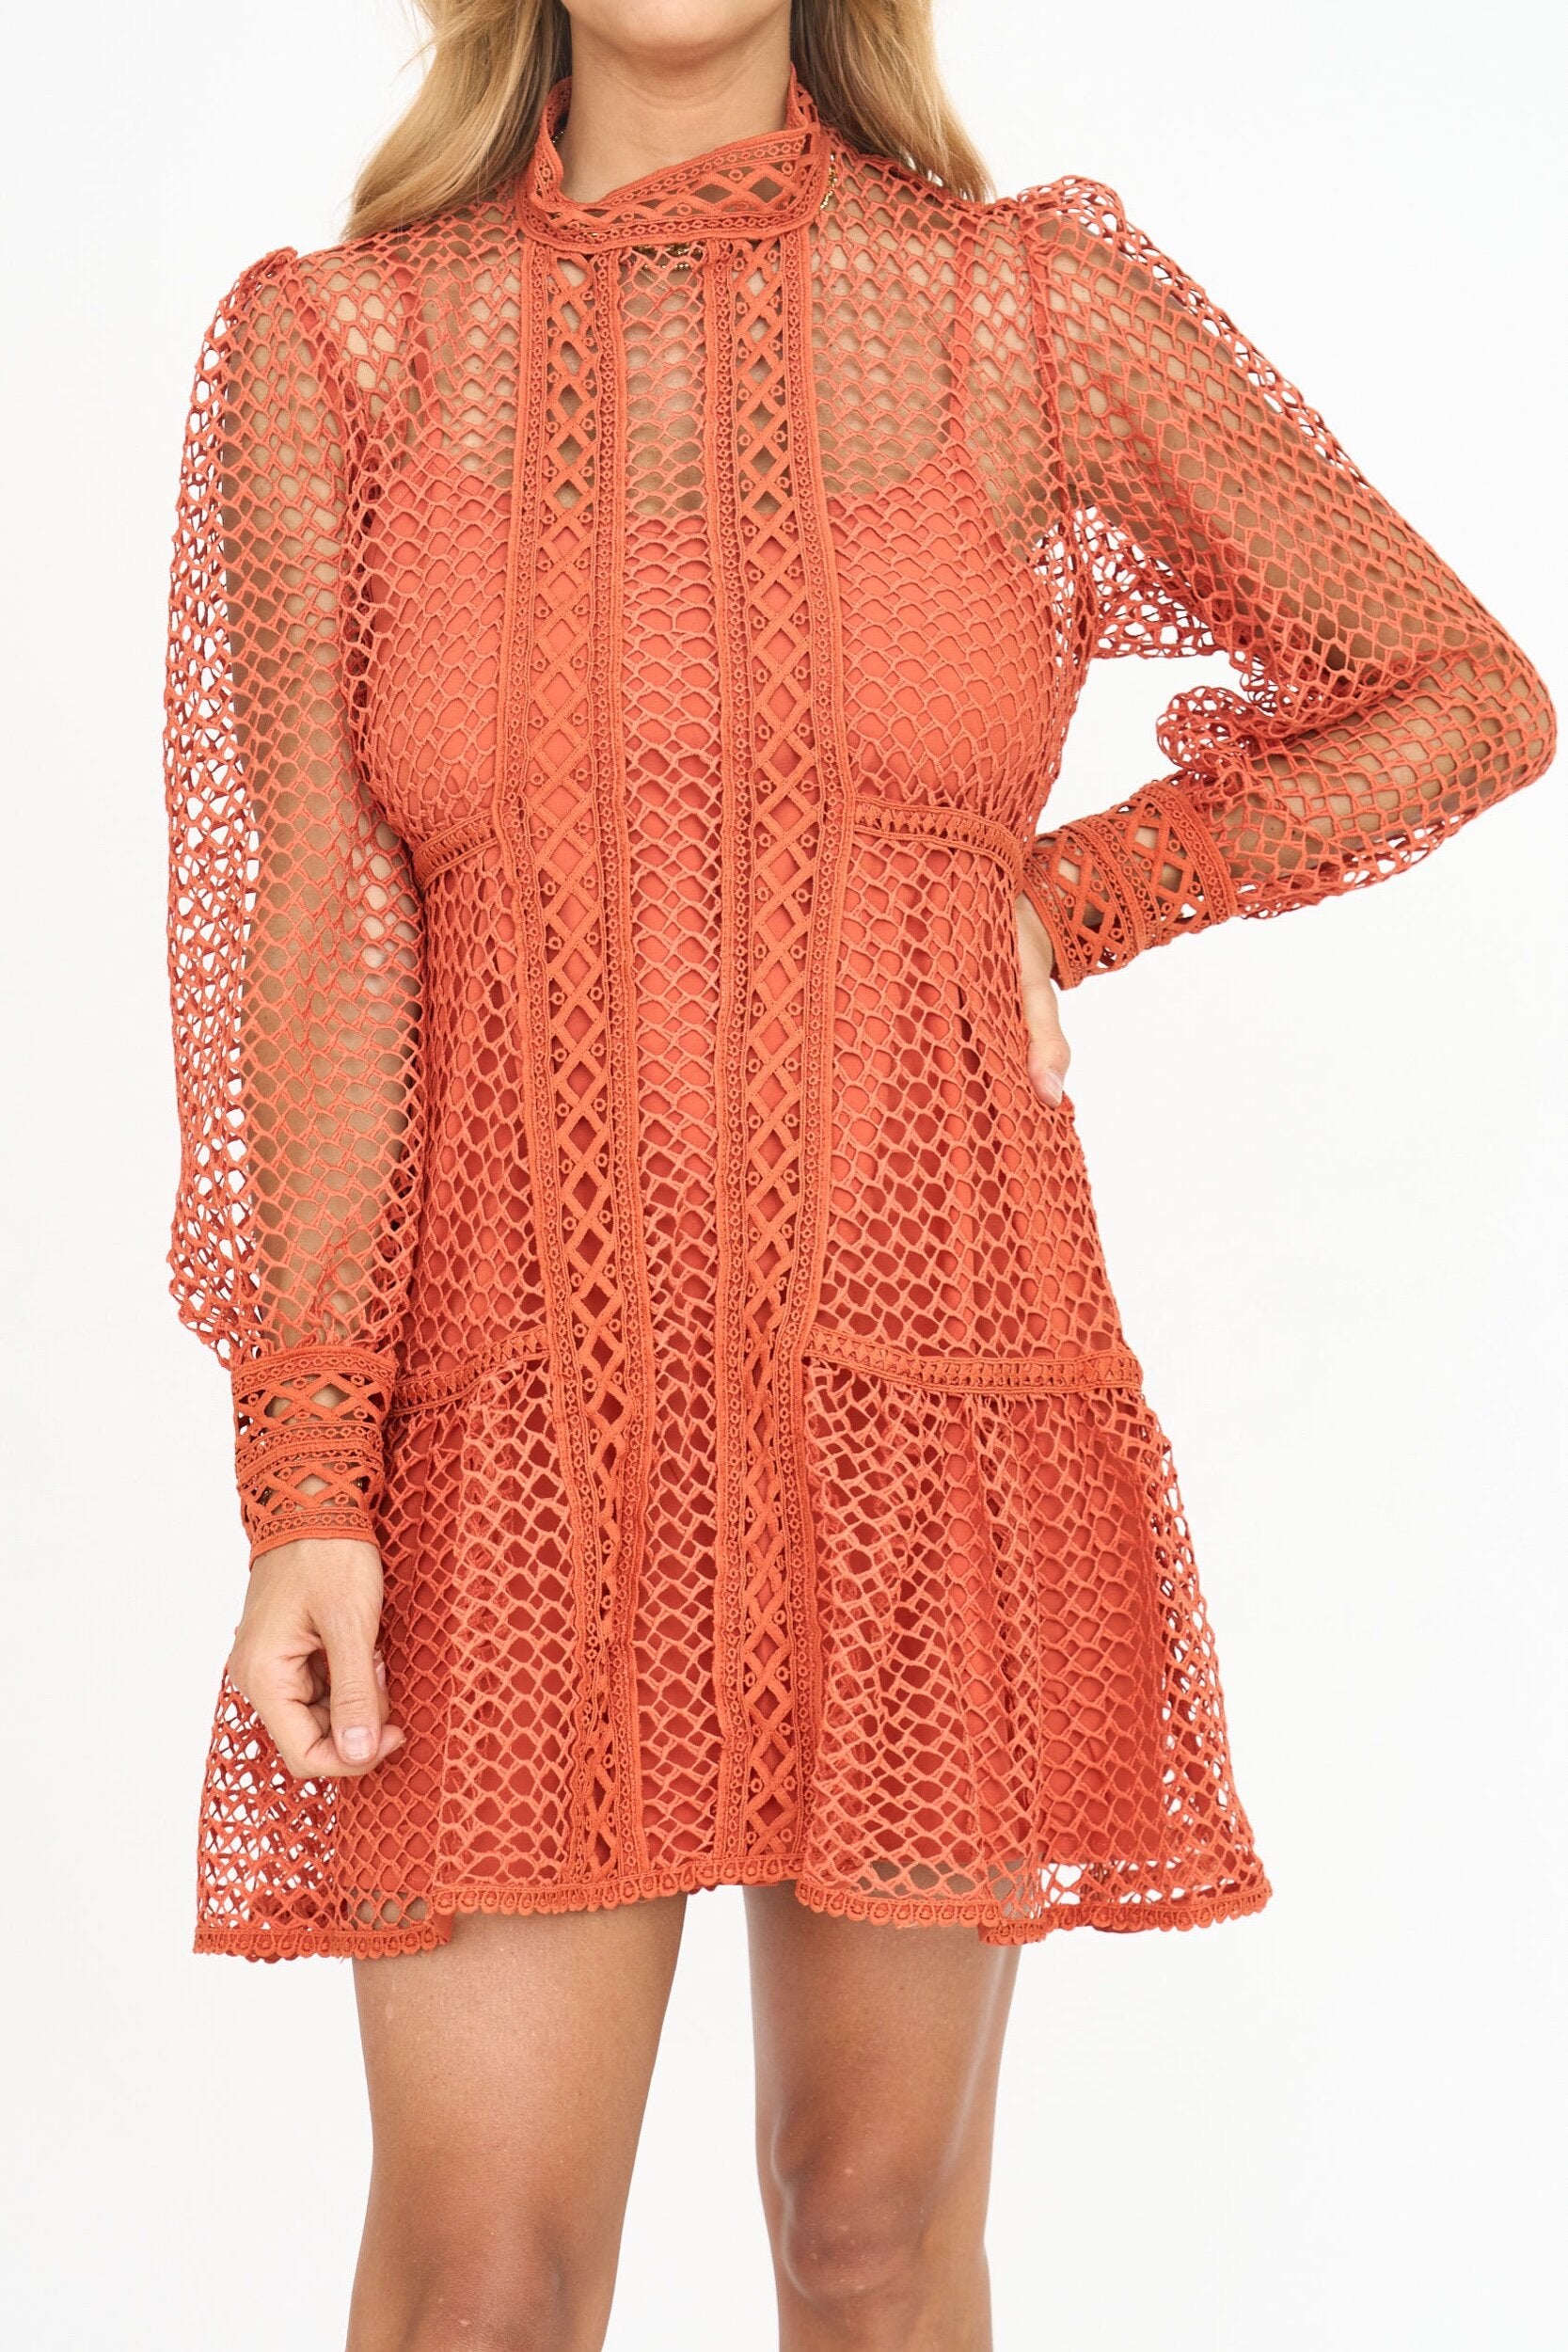 Fishnet Lace Mini Dress